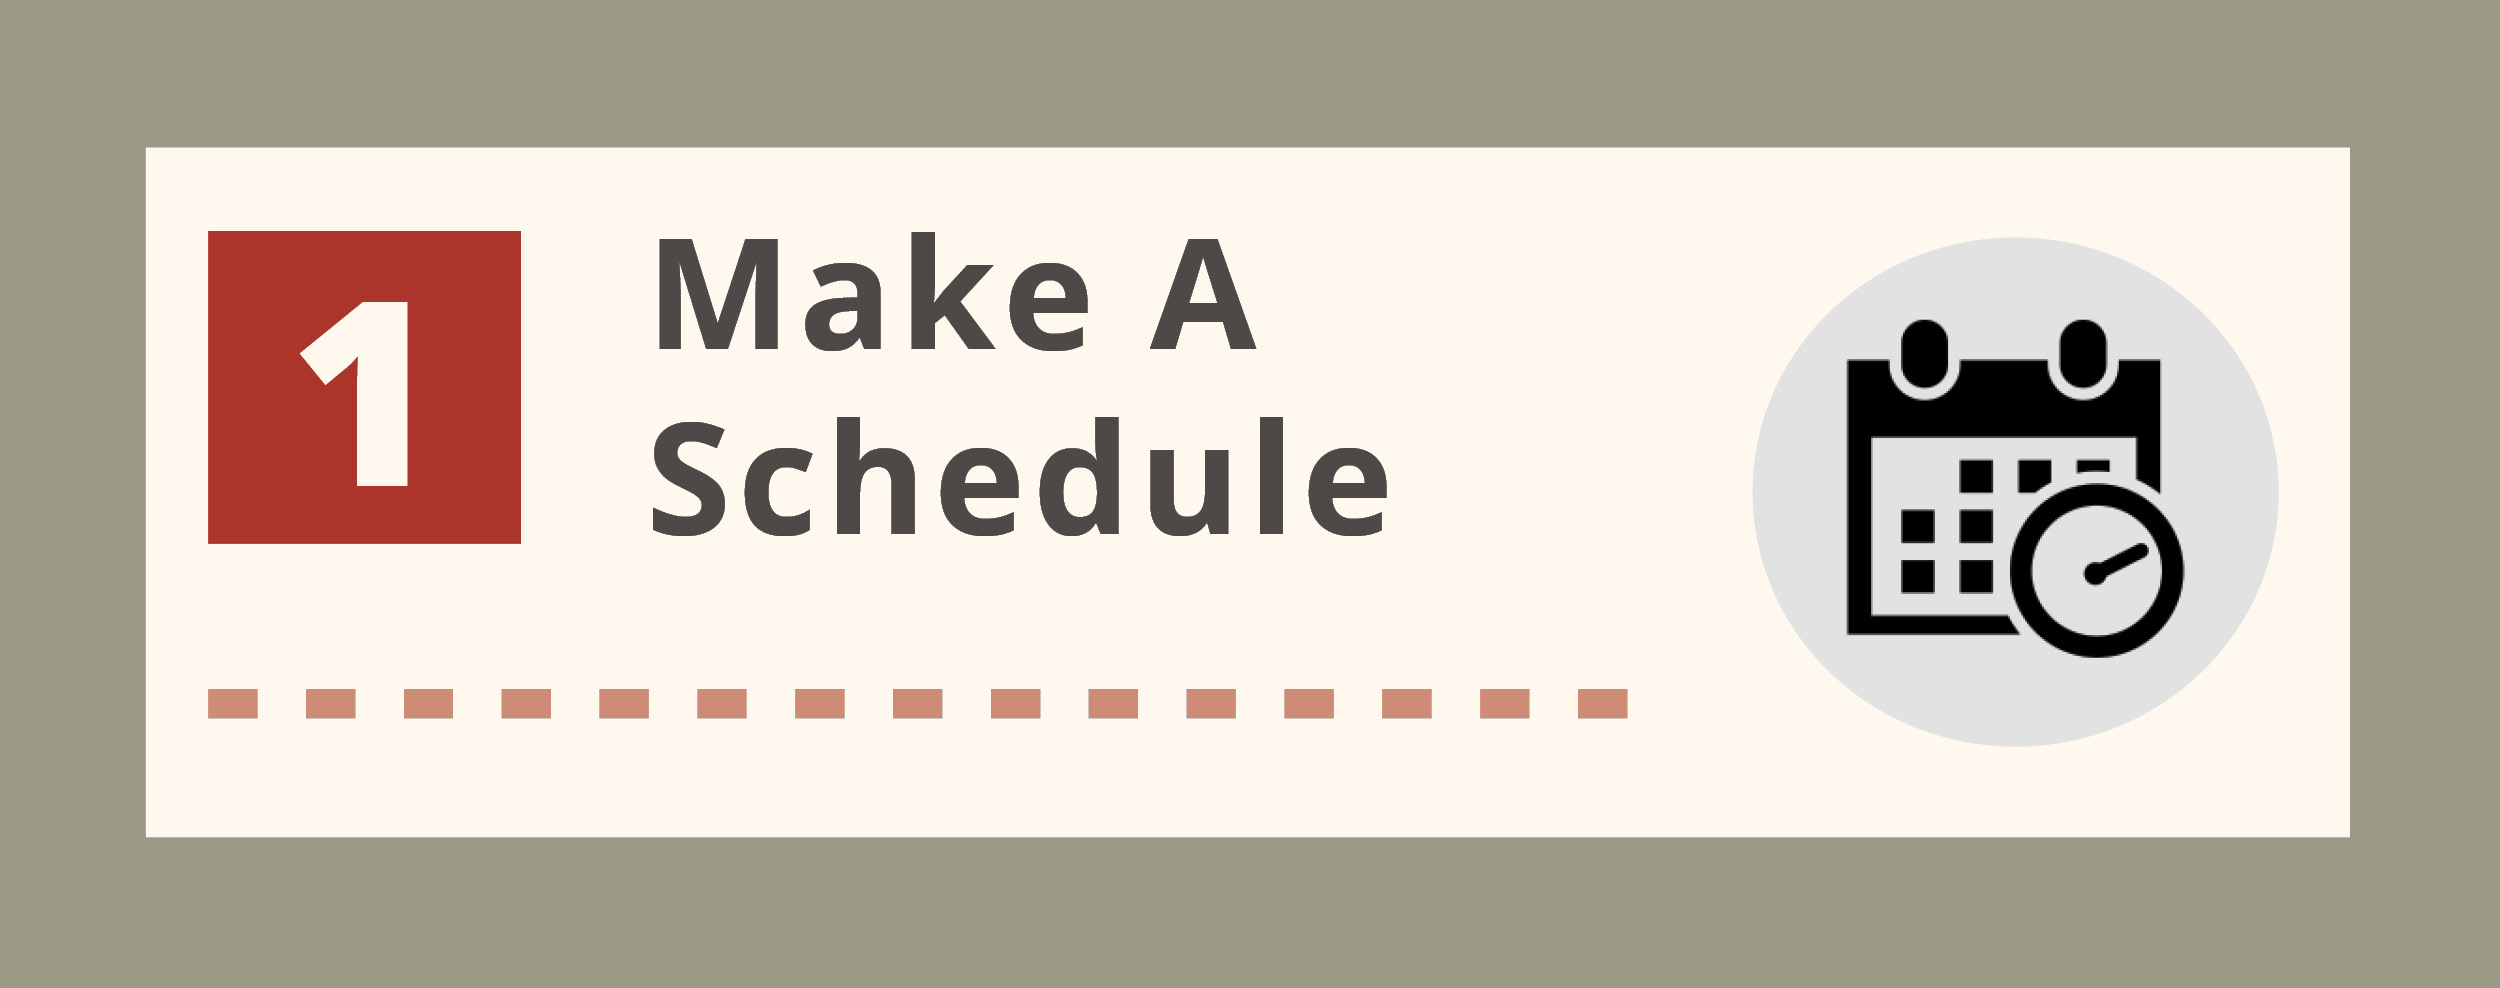 Make a schedule text